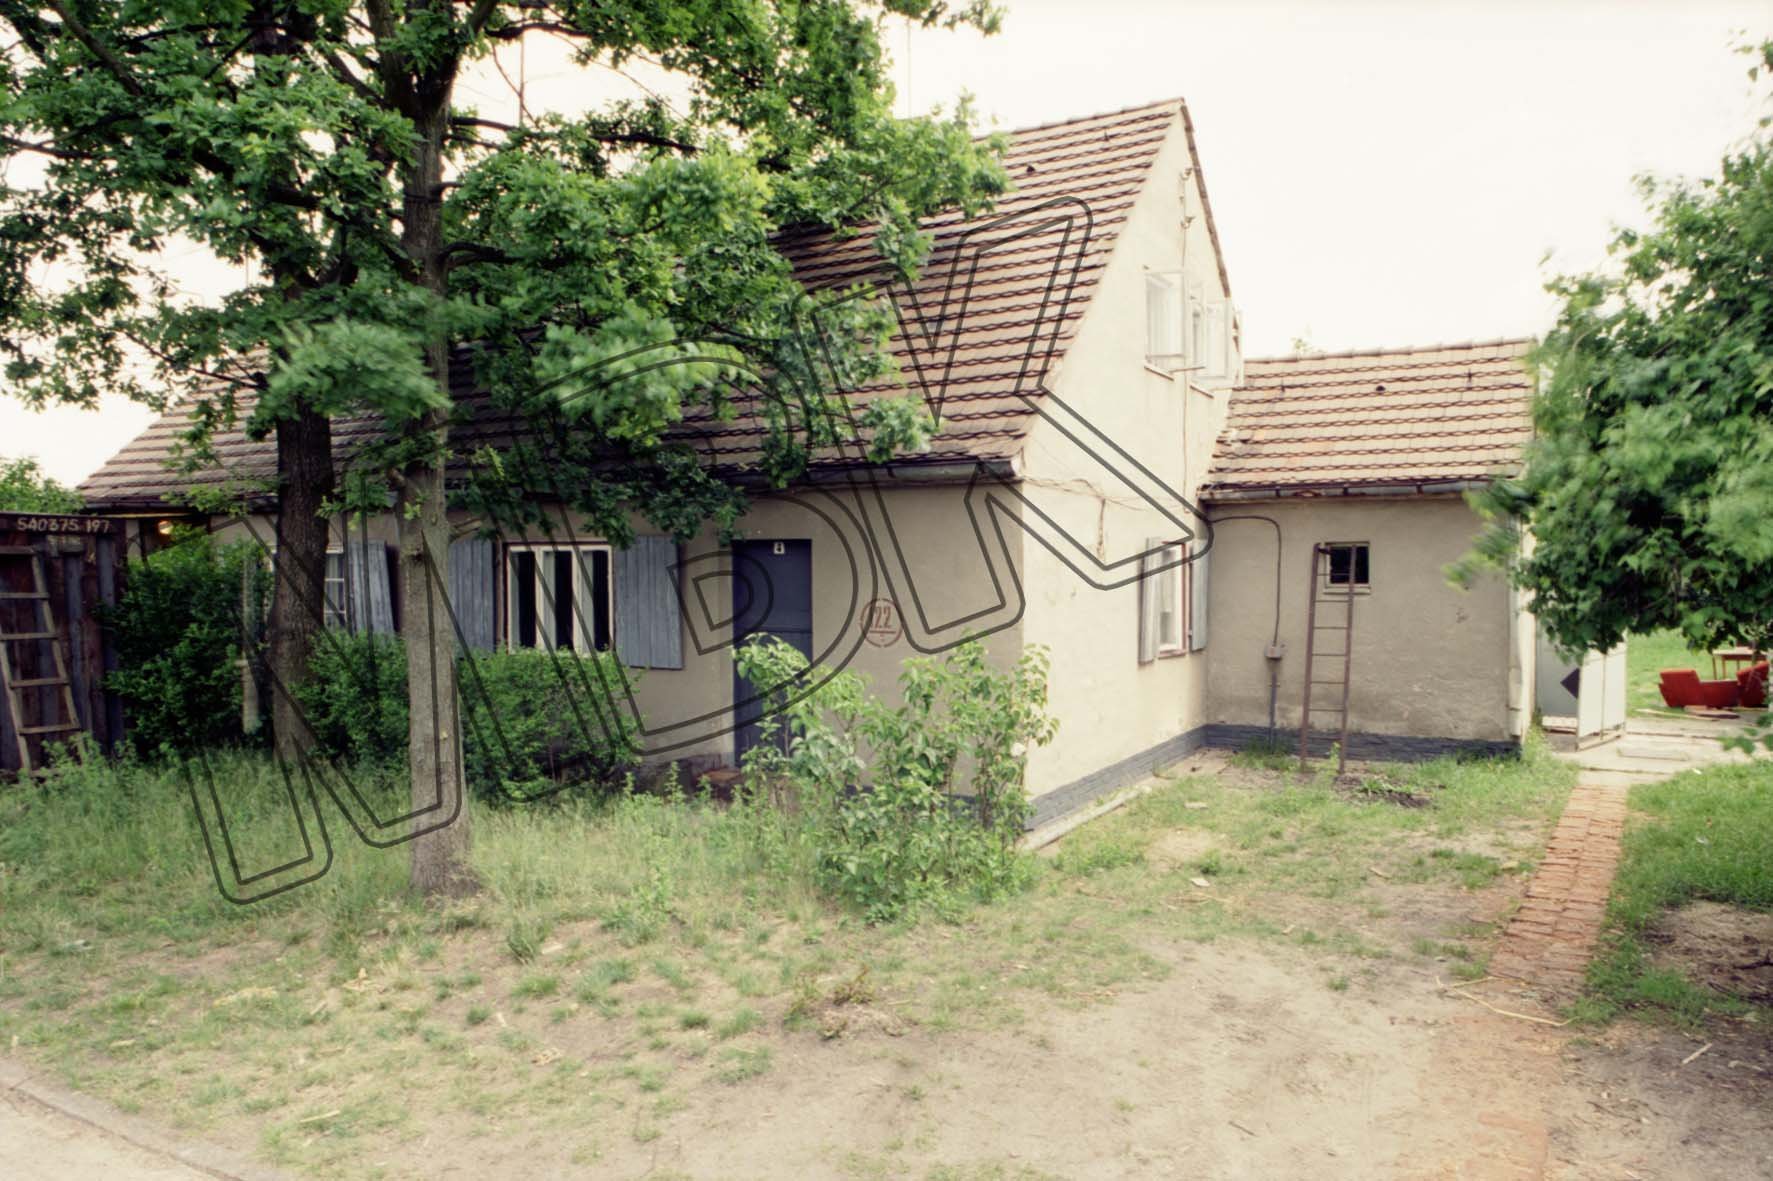 Fotografie: Wohnhaus, Fliegerstadt (3. Gorodok), Wünsdorf, vermutlich 1994 (Museum Berlin-Karlshorst RR-P)